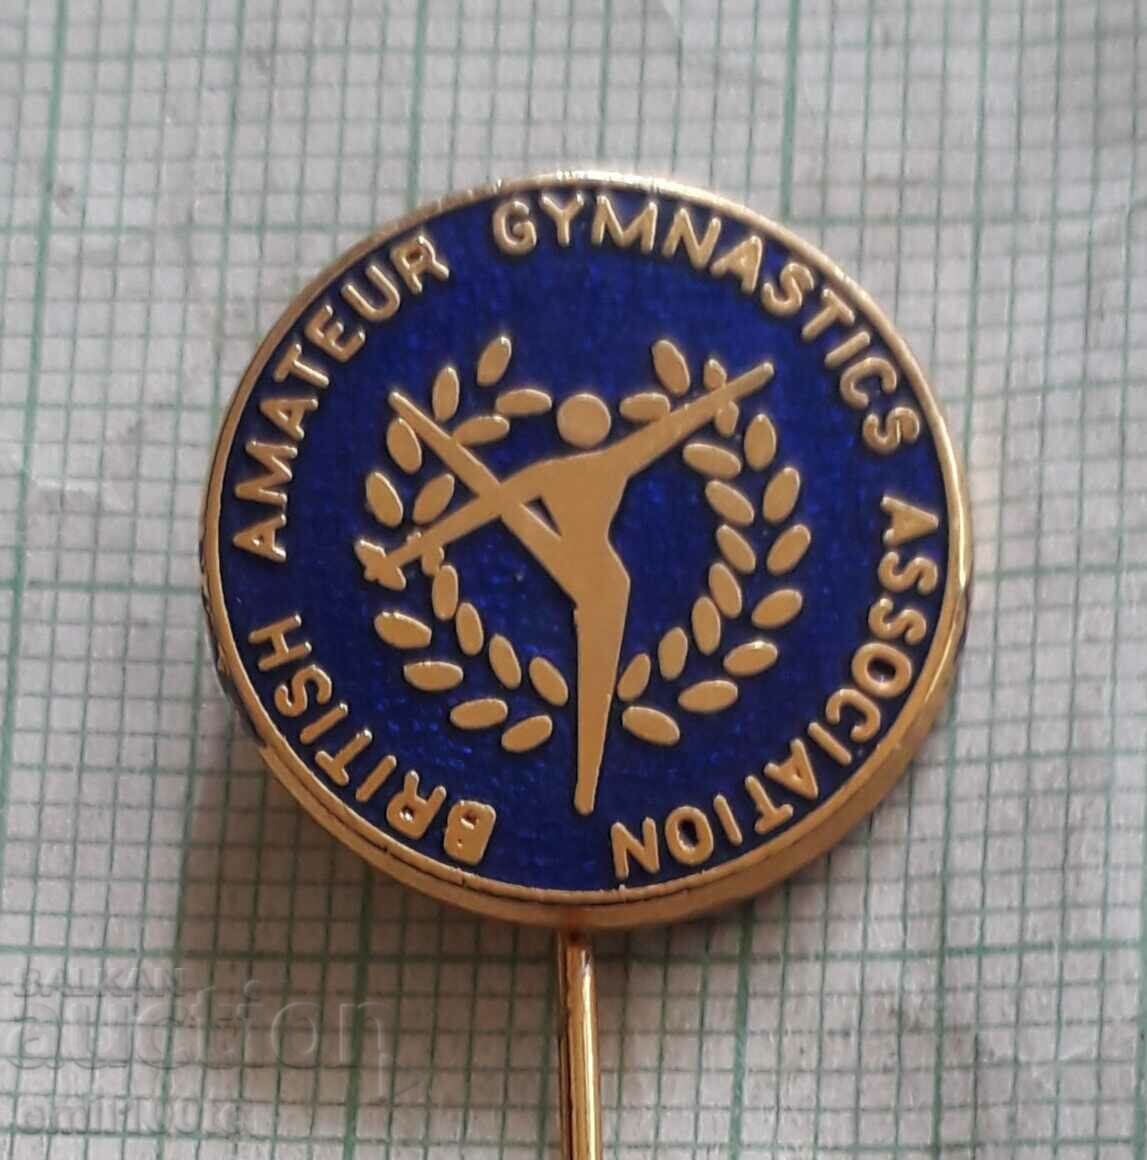 Значка- Британска аматьорска федерация по гимнастика